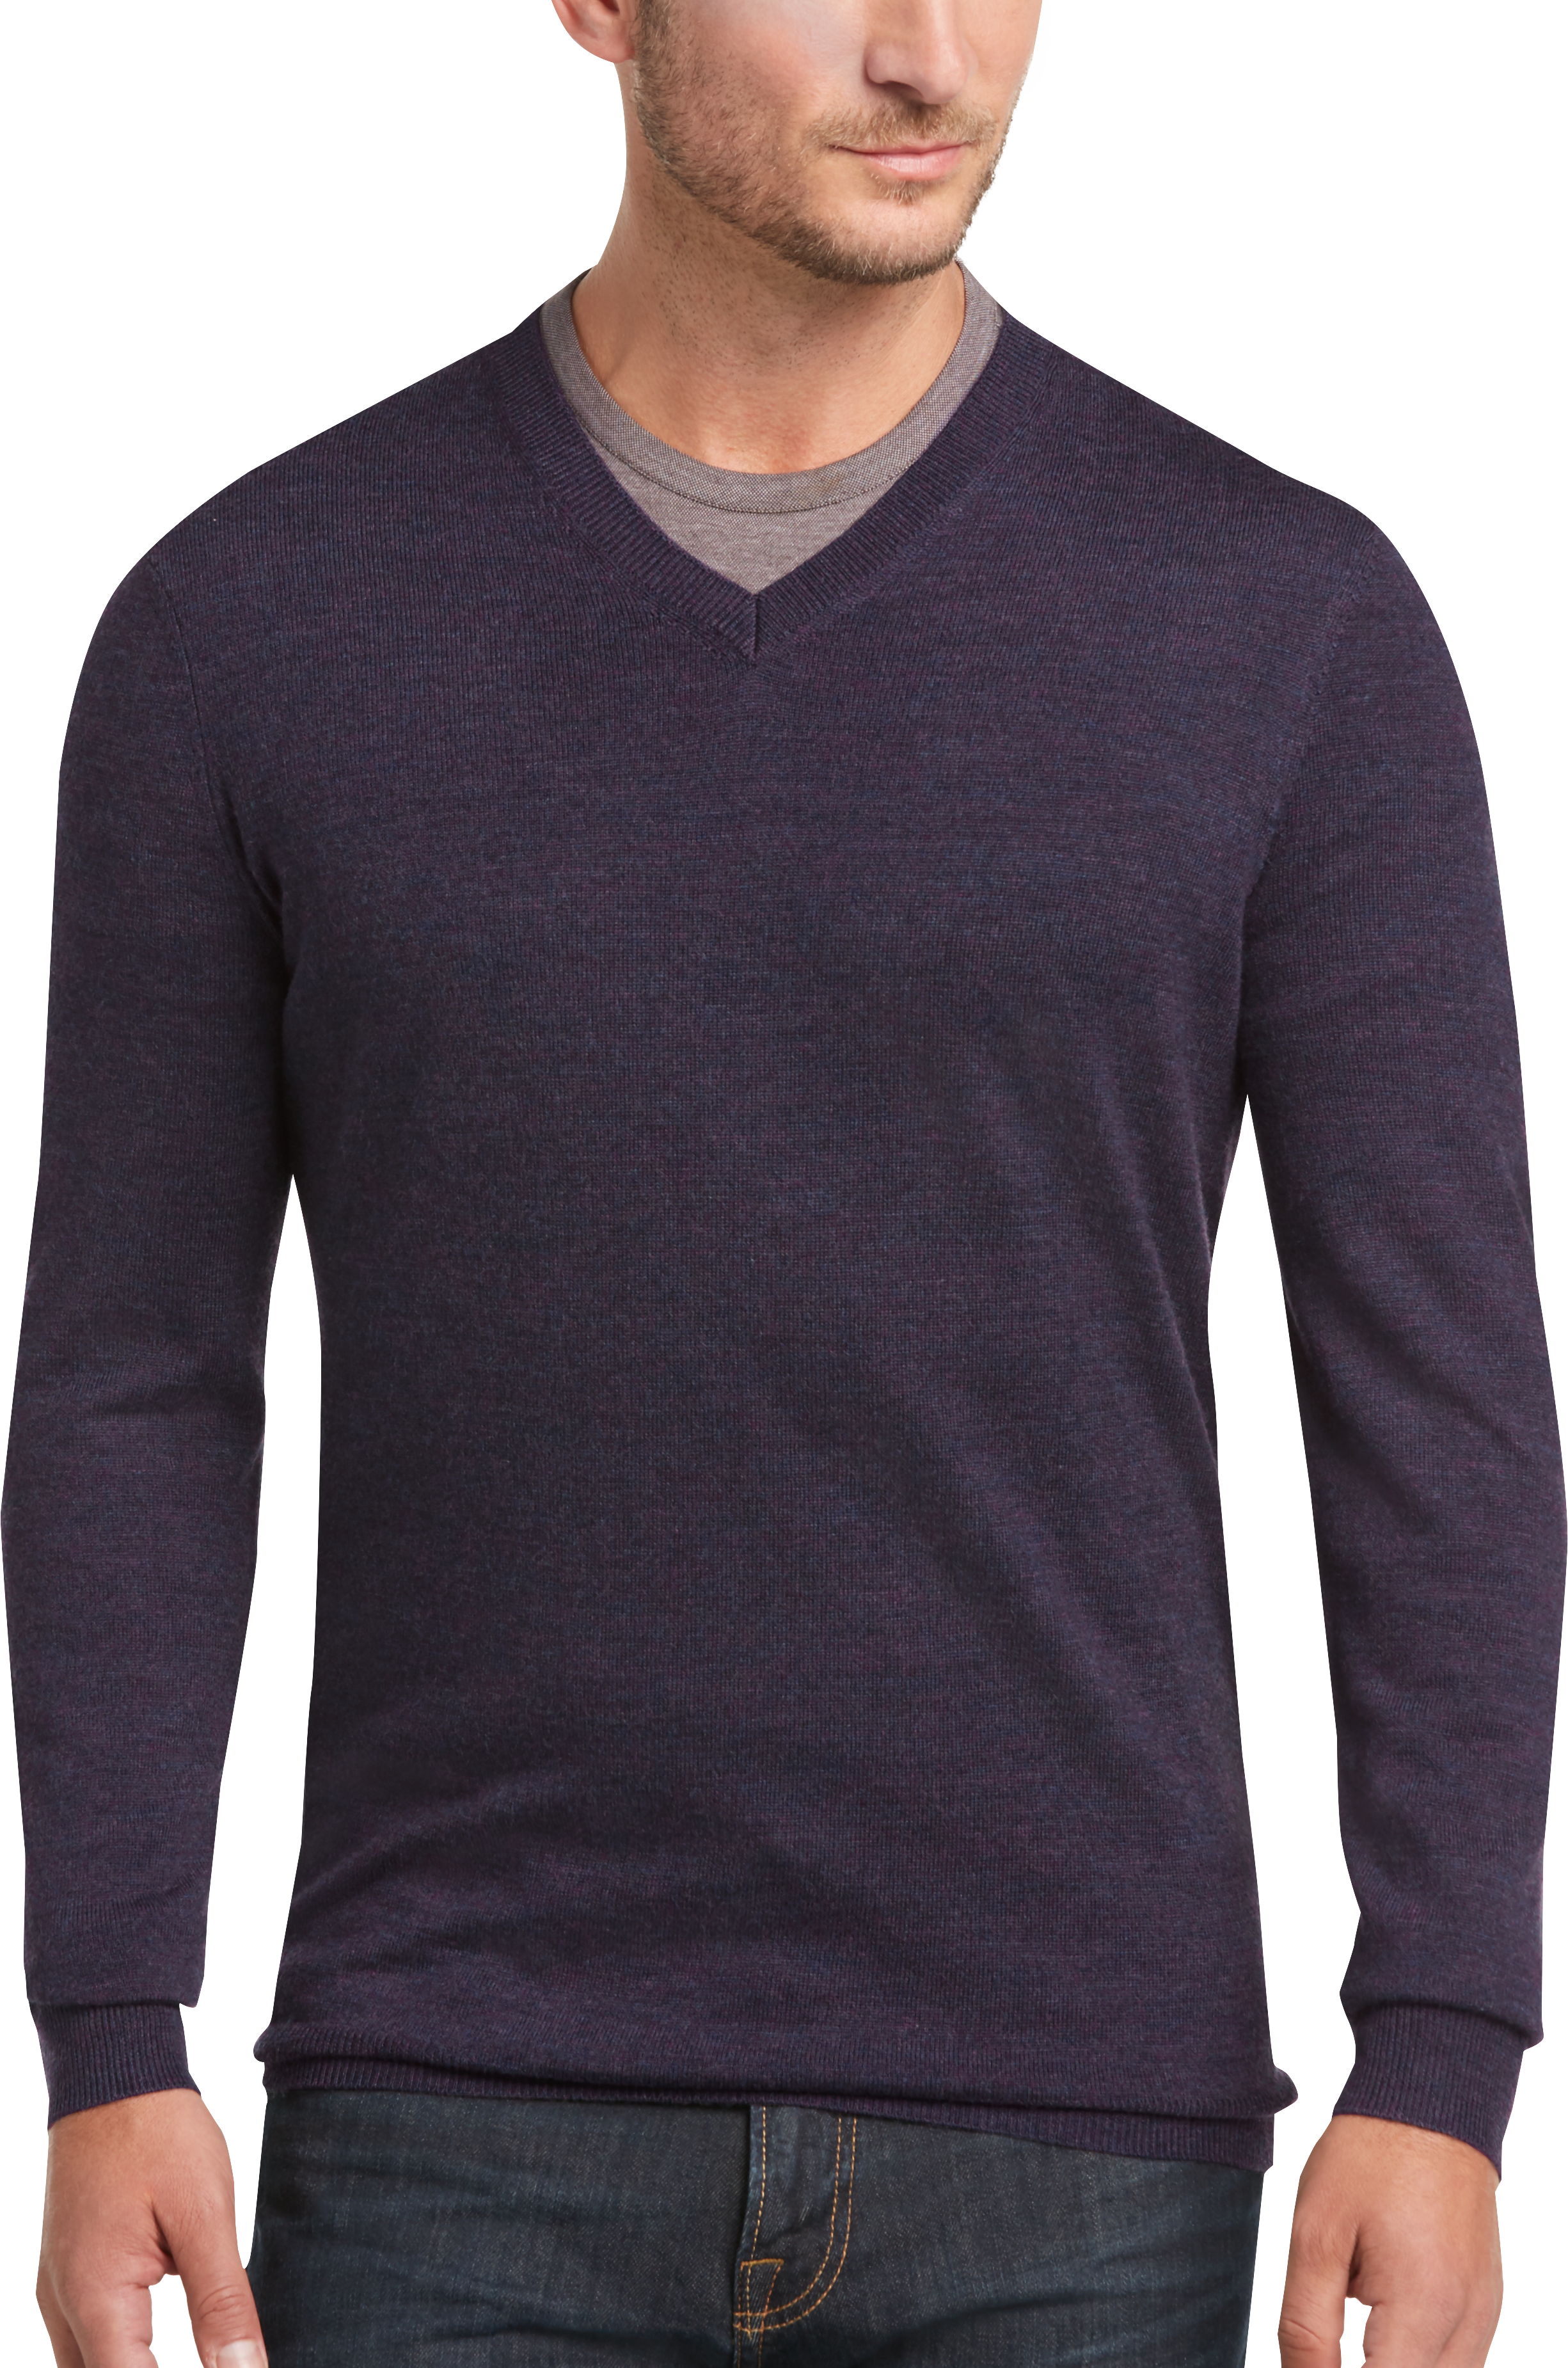 Joseph Abboud Purple Modern Fit V-Neck Merino Wool Sweater - Men's Sale ...